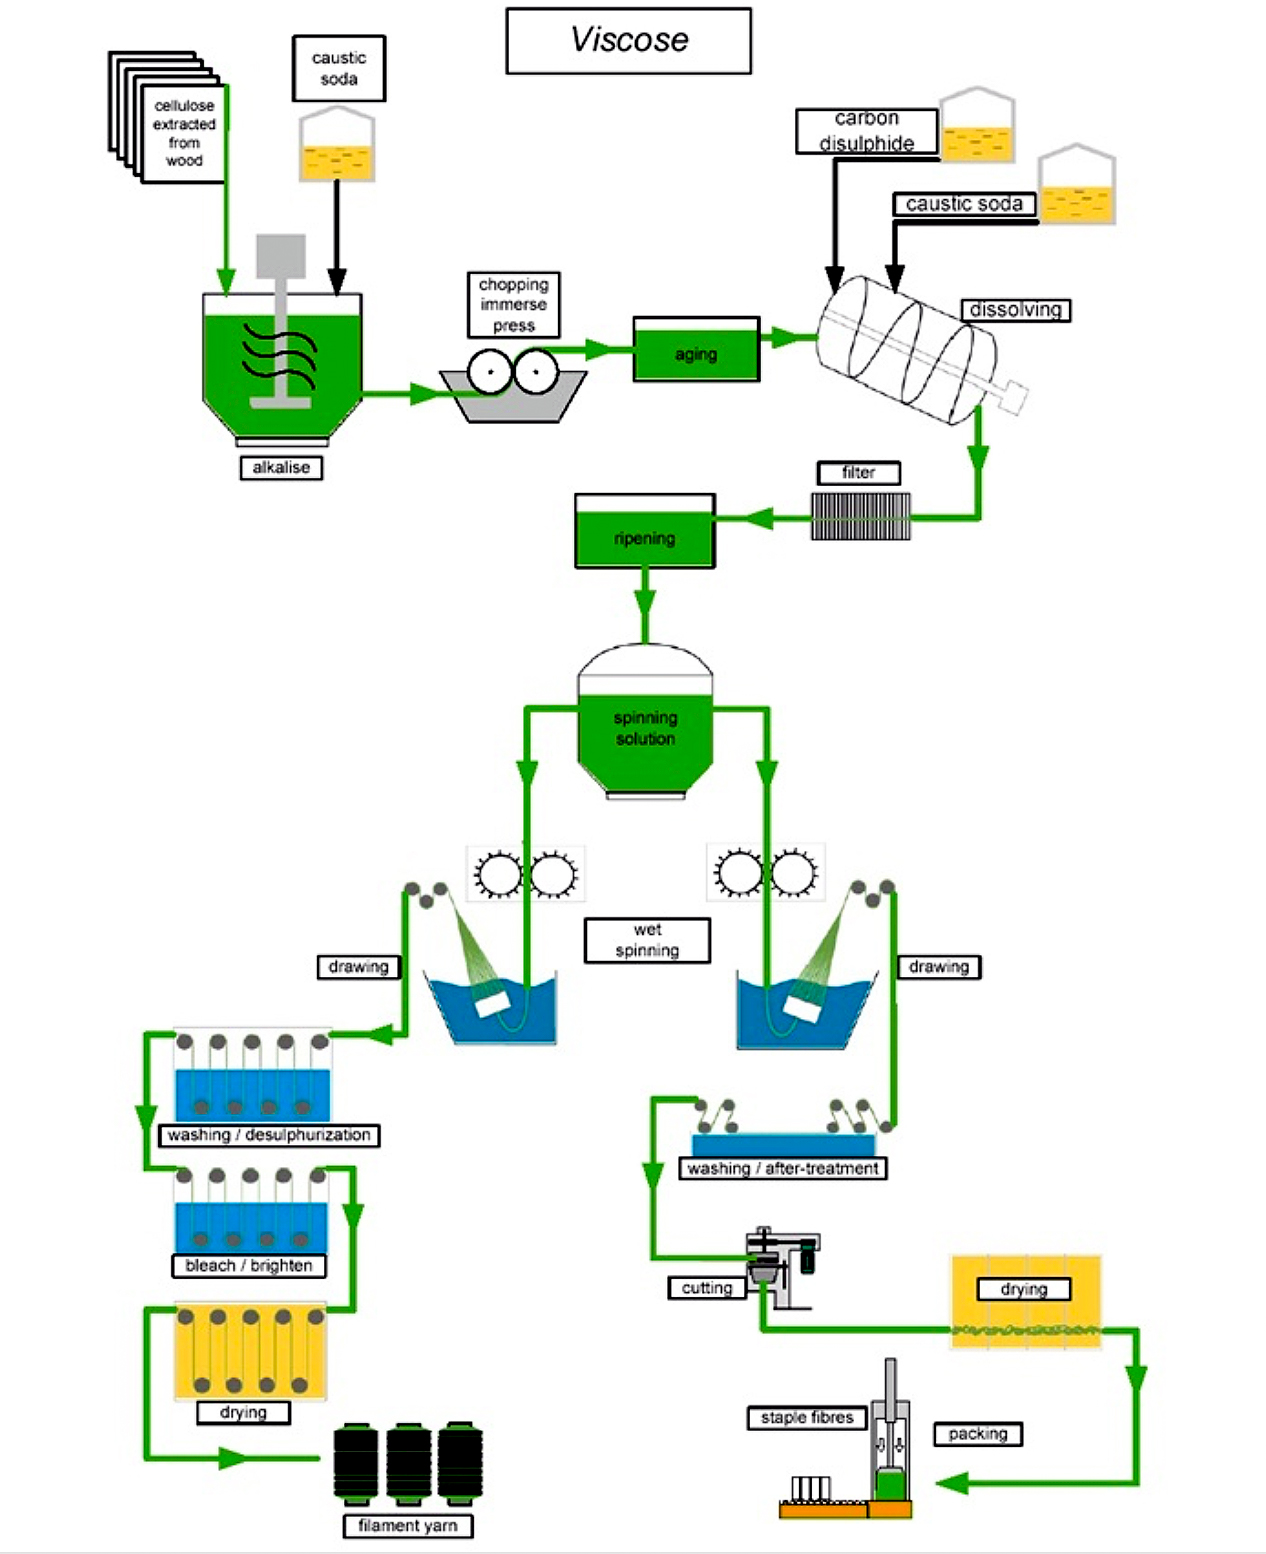 Viscose process diagram